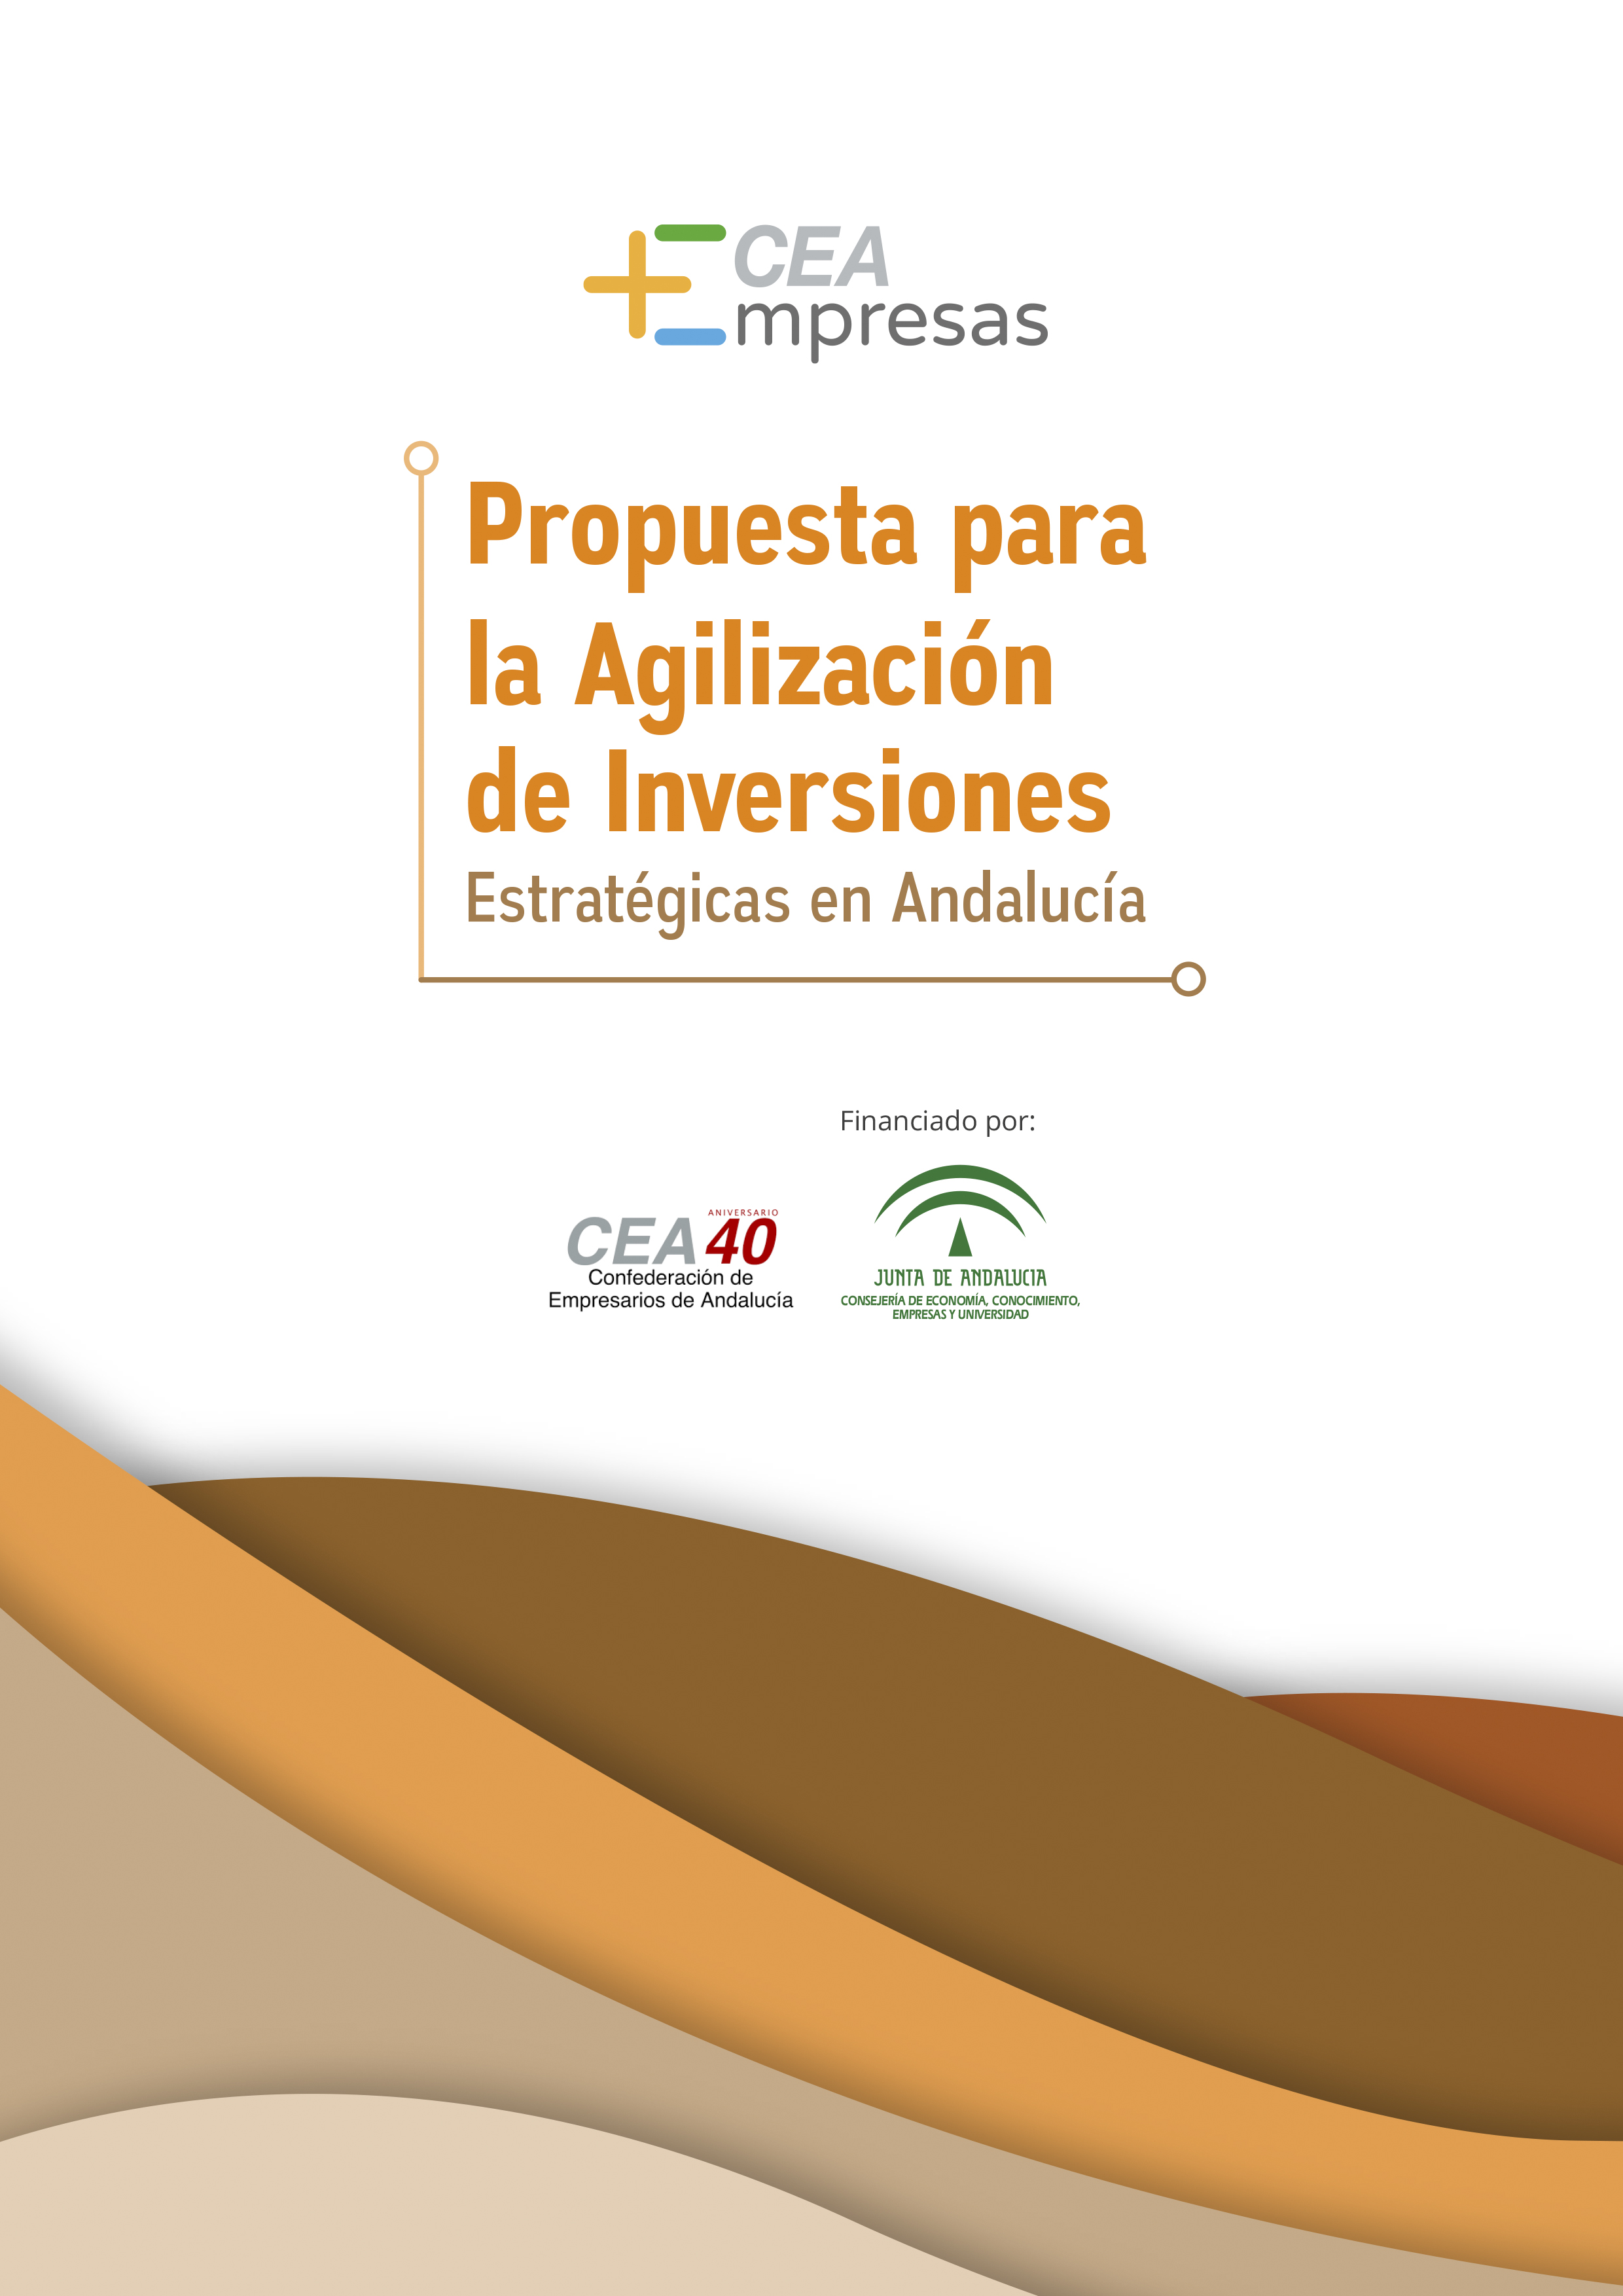 Propuesta para la Agilización de Inversiones Estratégicas en Andalucía